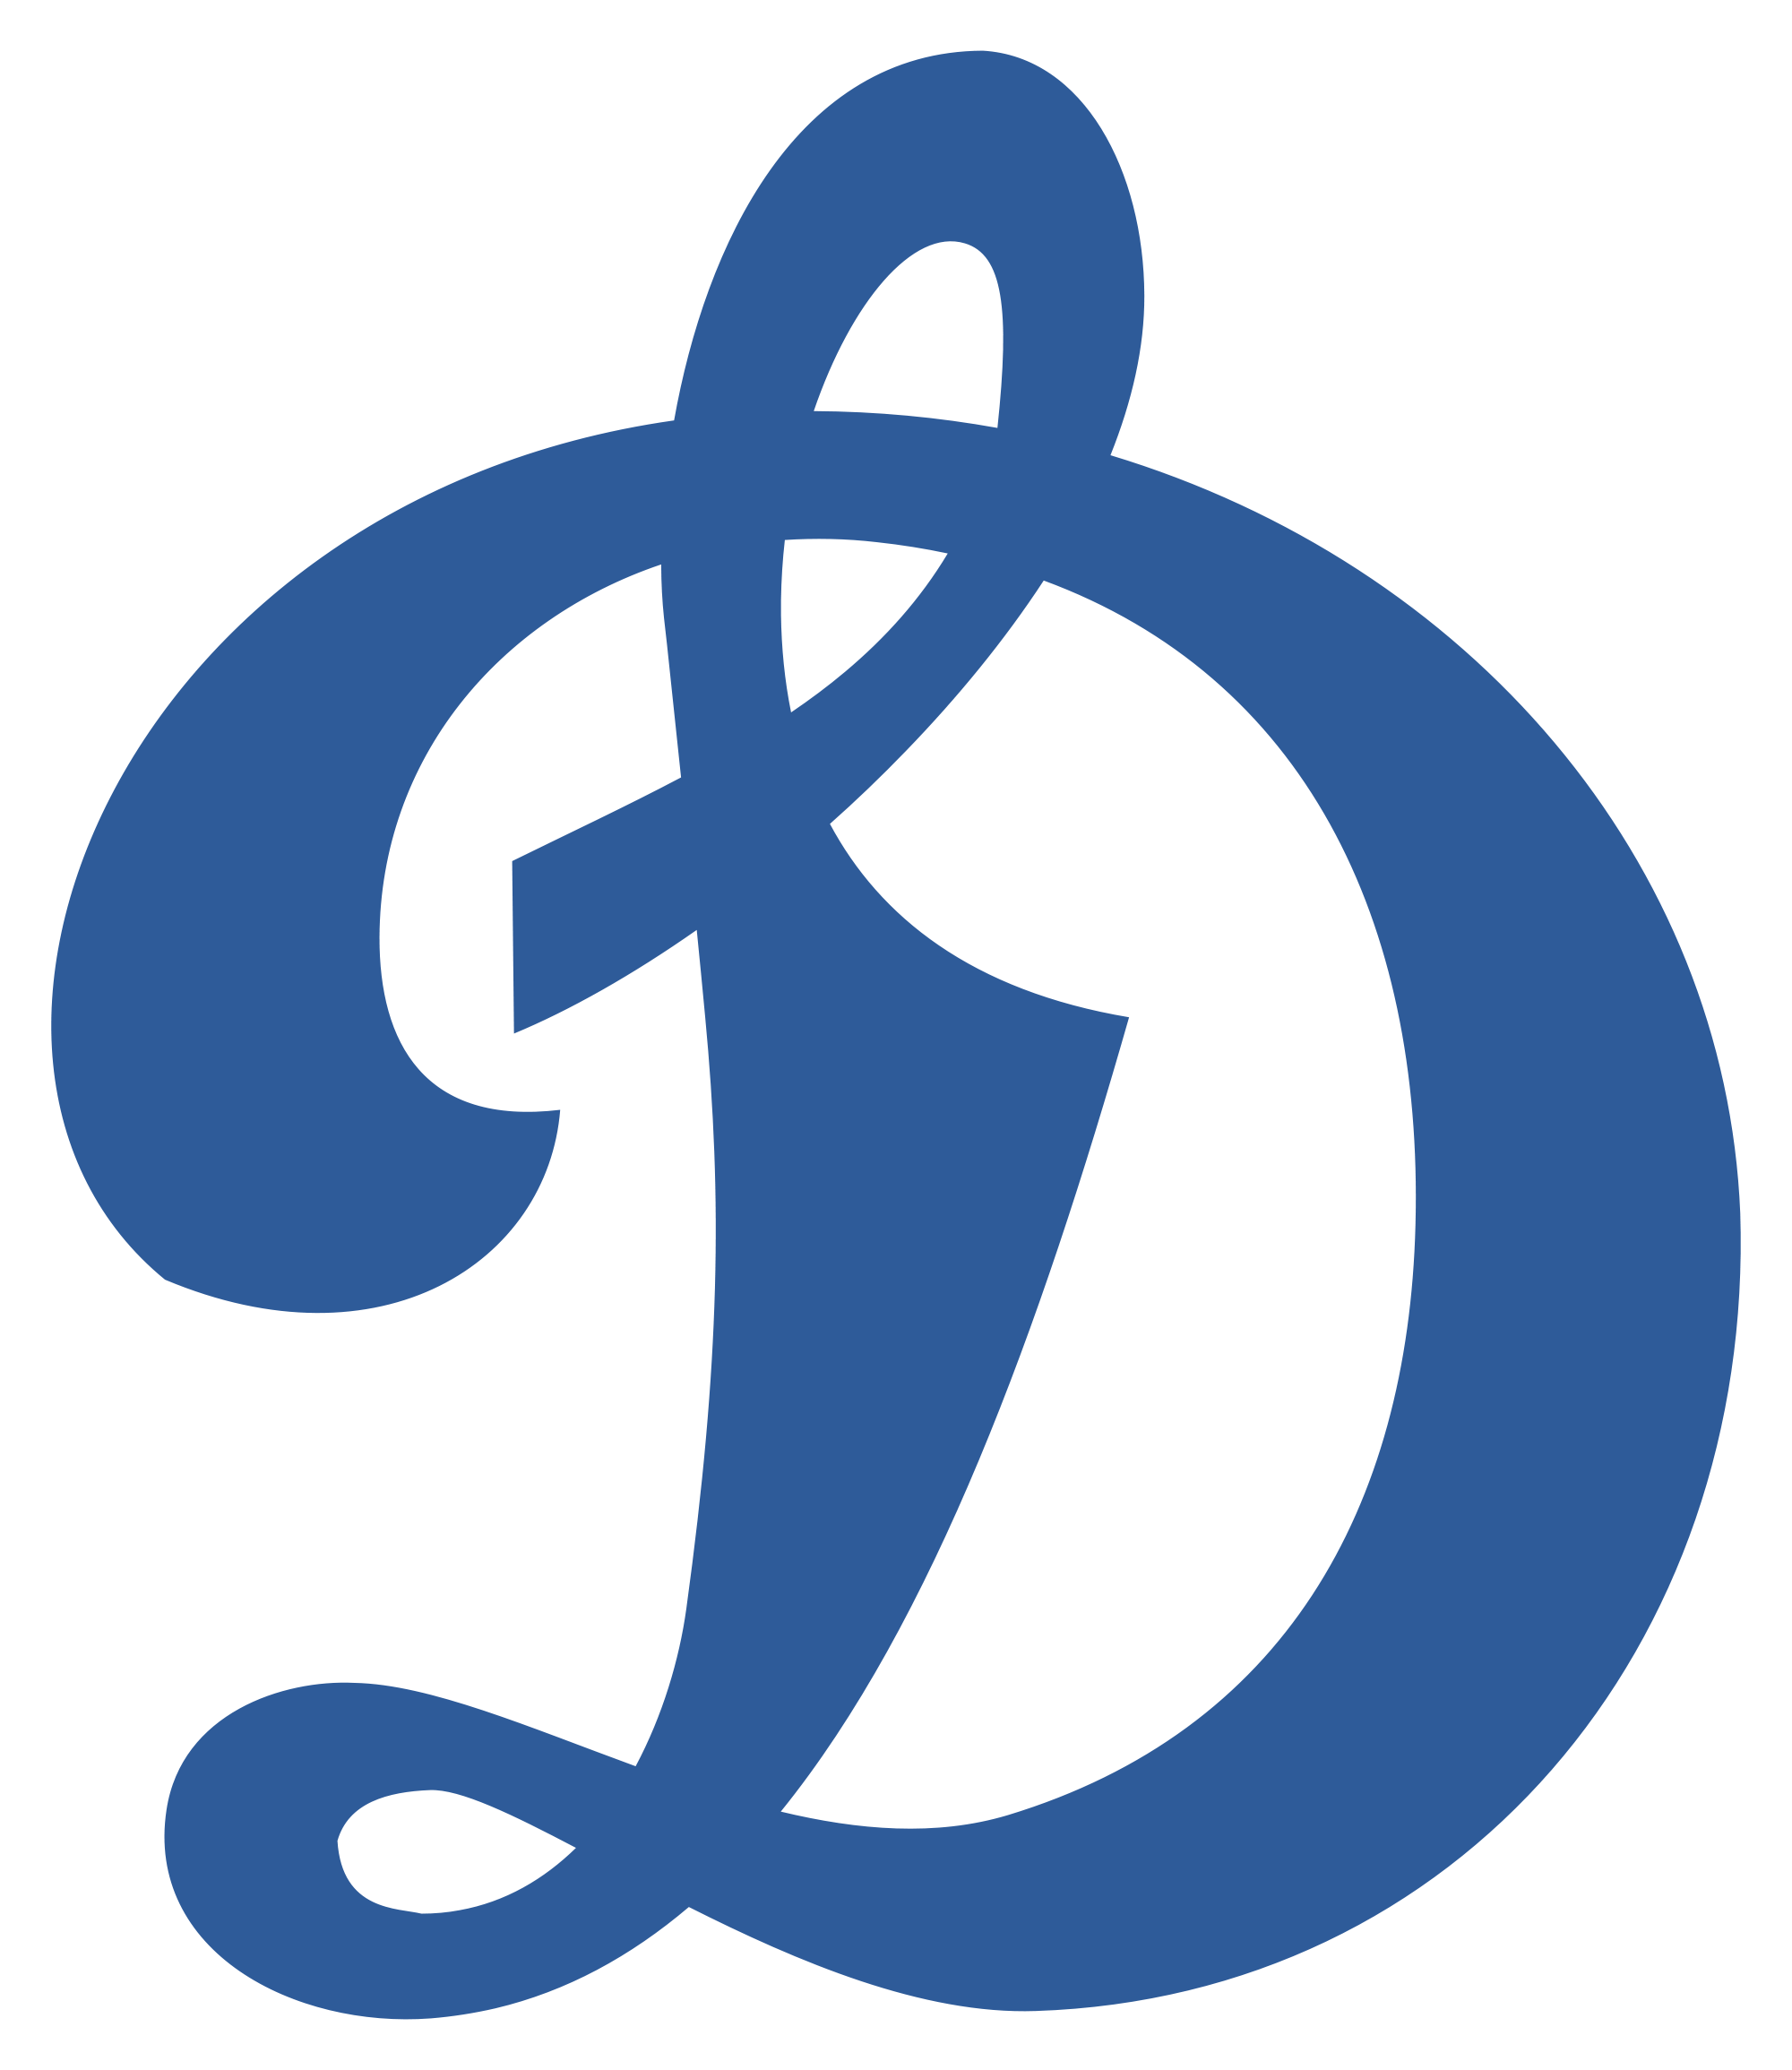 OHK_Dynamo_logo.png